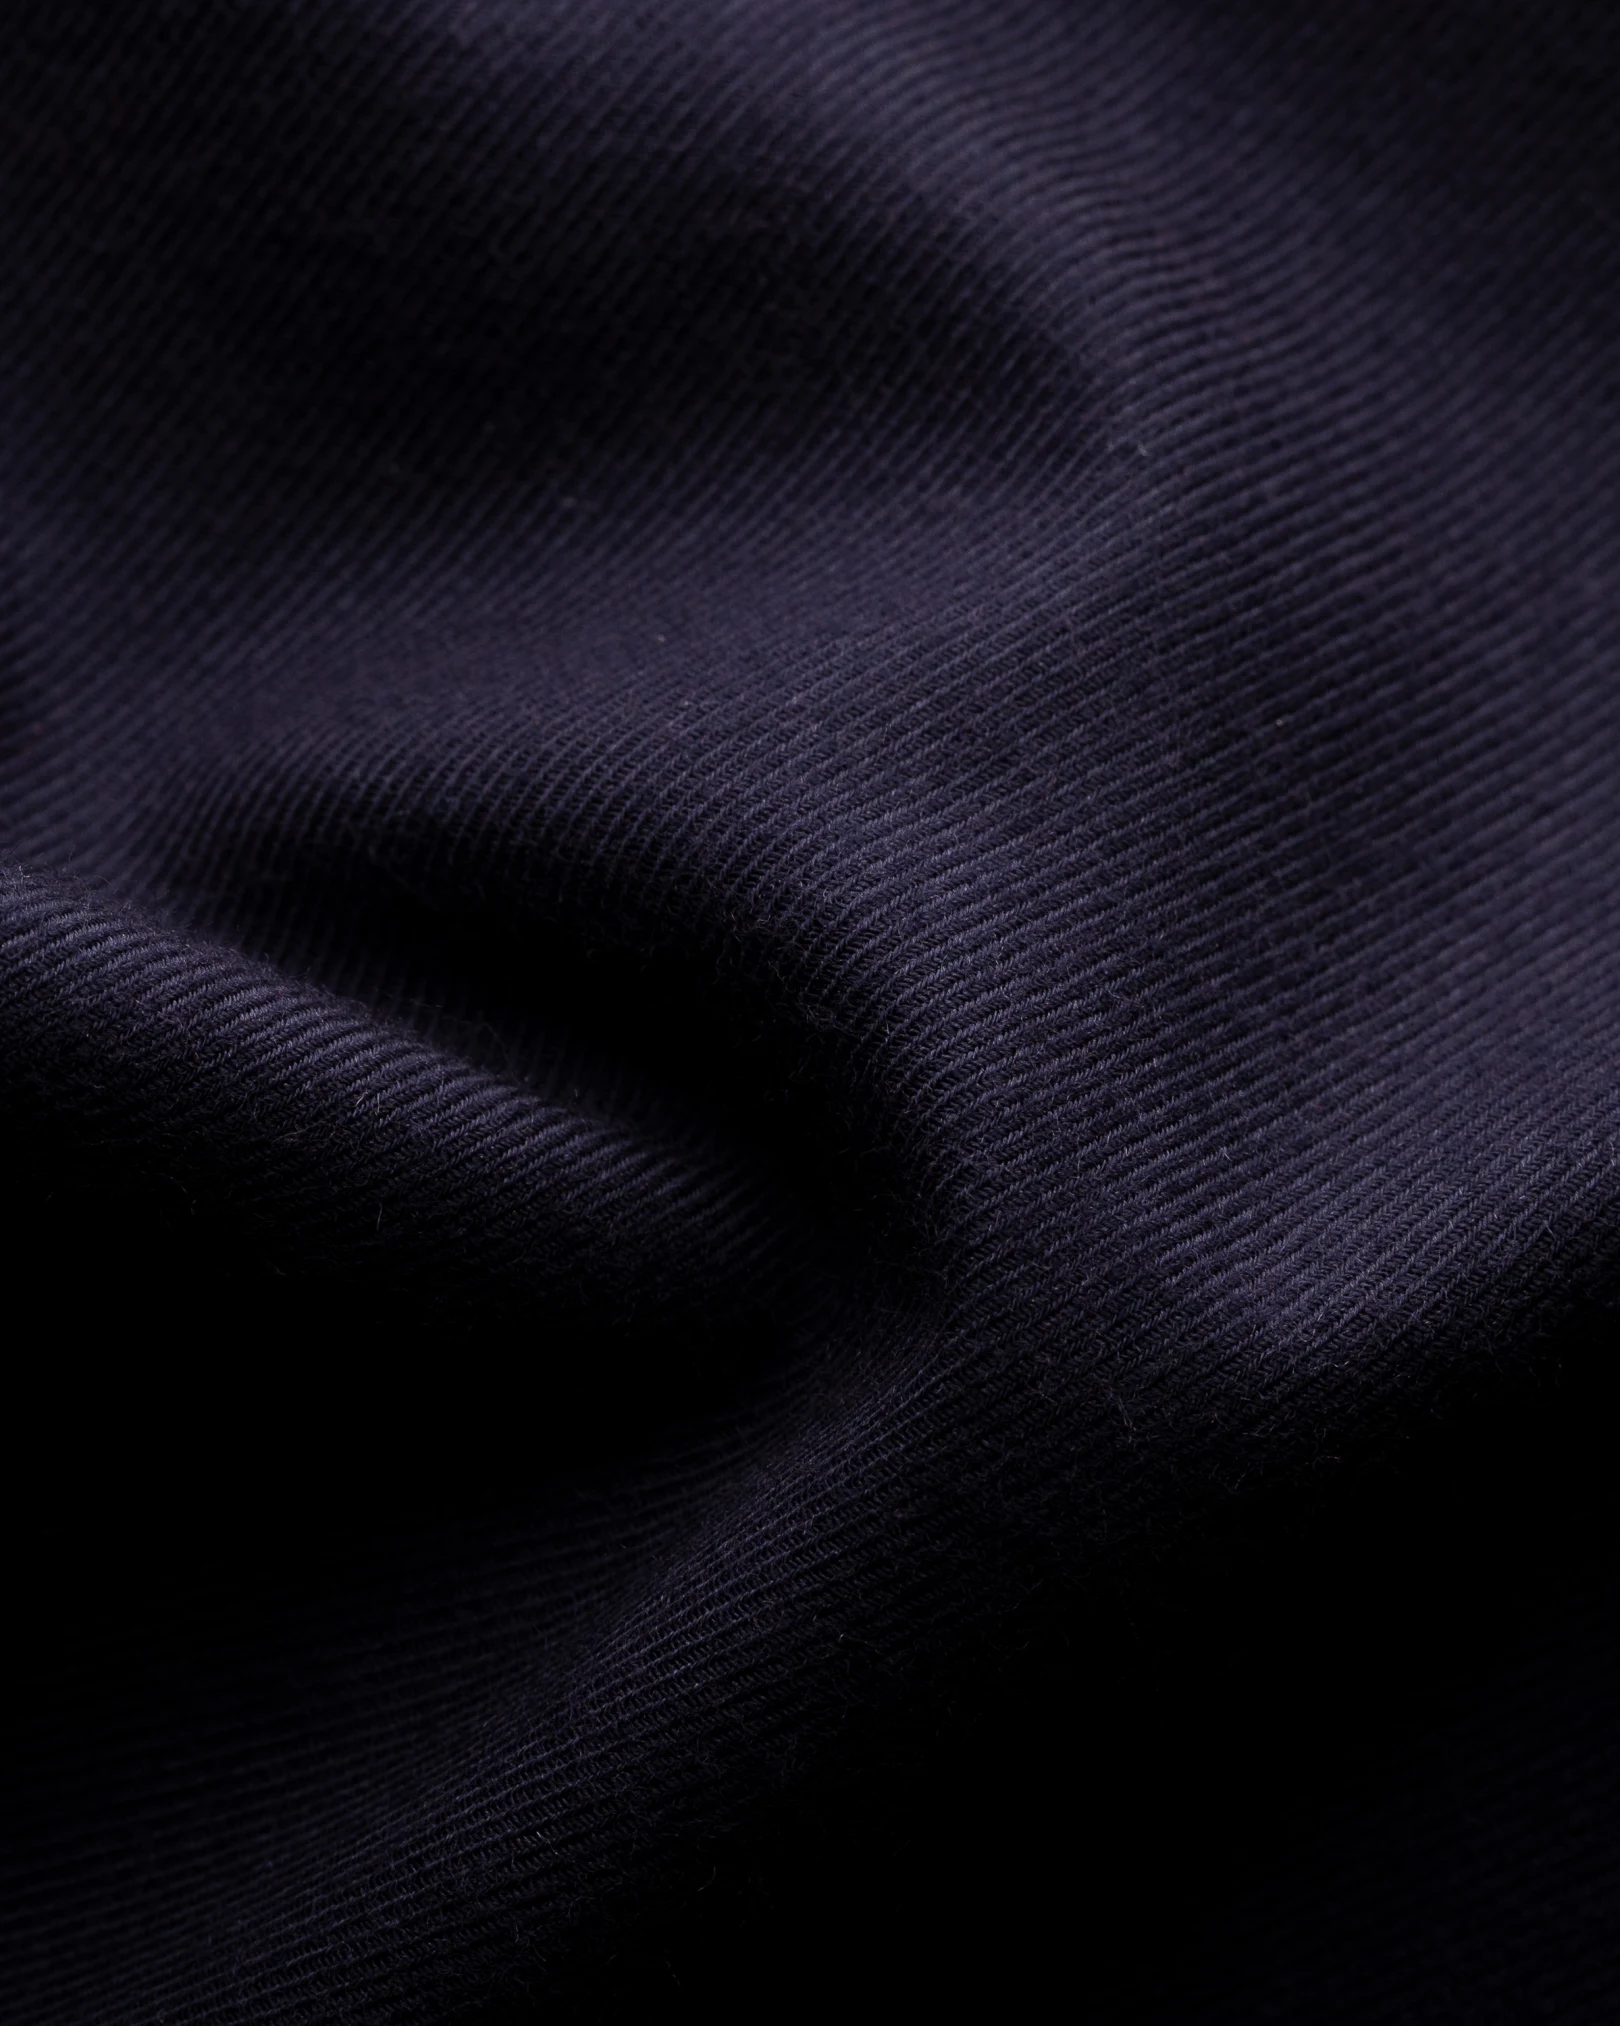 Merino Wool fabric